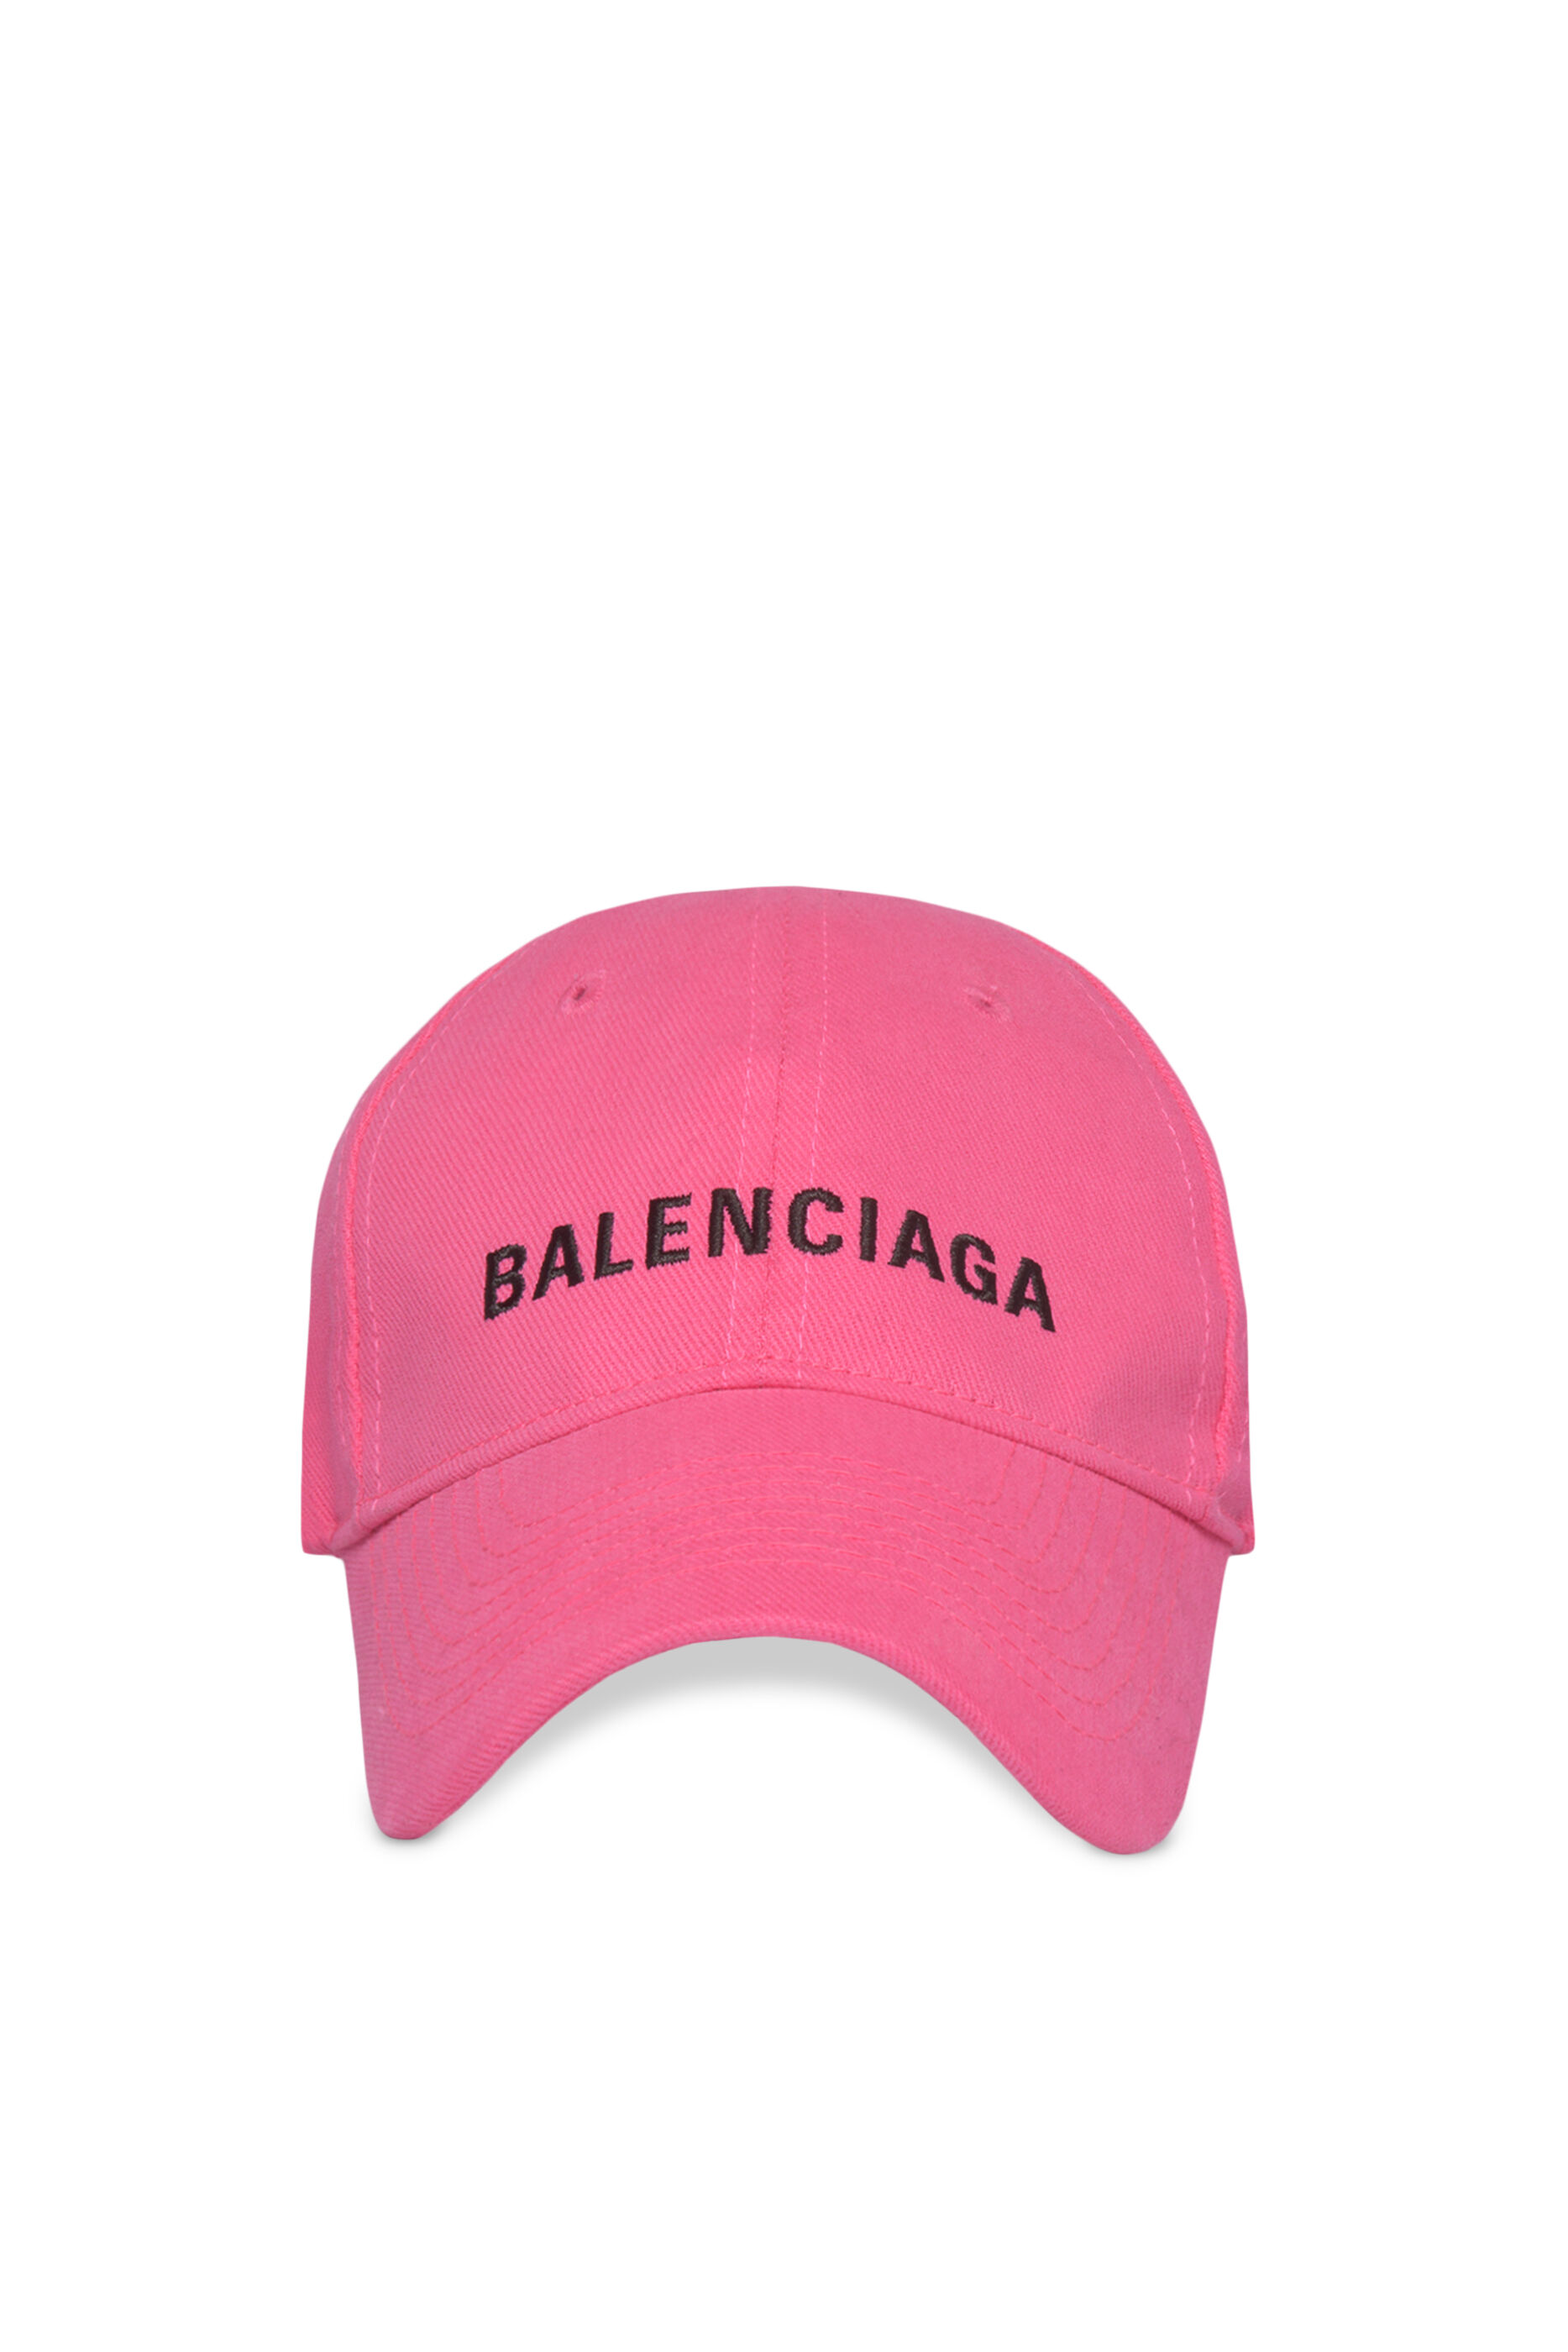 Balenciaga Cap Online Sale, UP TO 65%